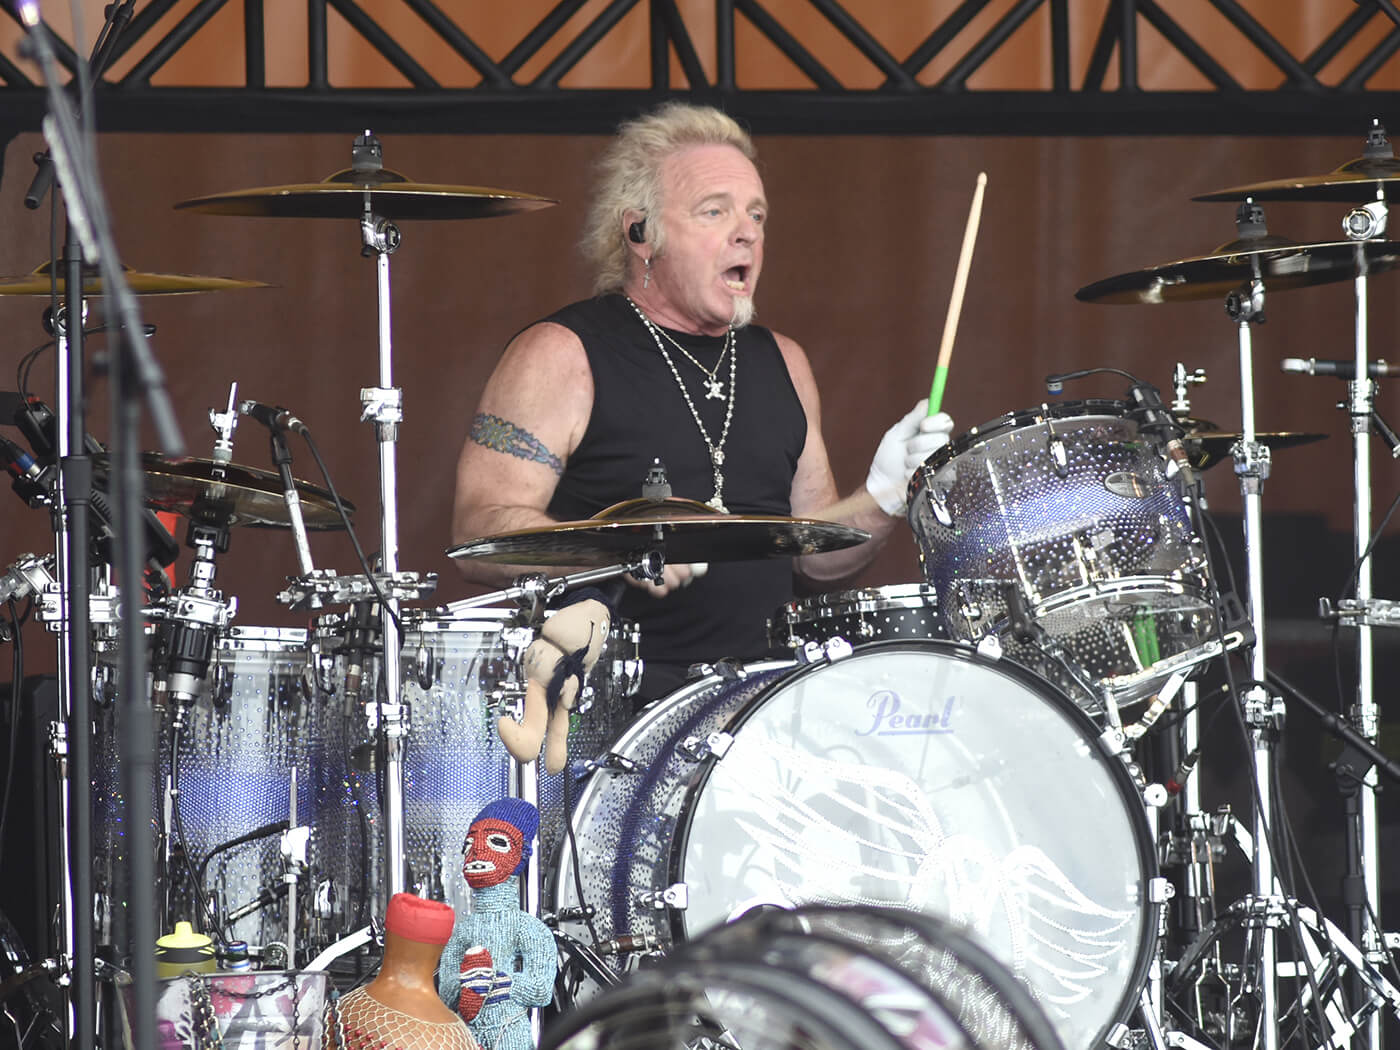 Massachusetts court rules that drummer joey kramer will not be allowed to rejoin aerosmith